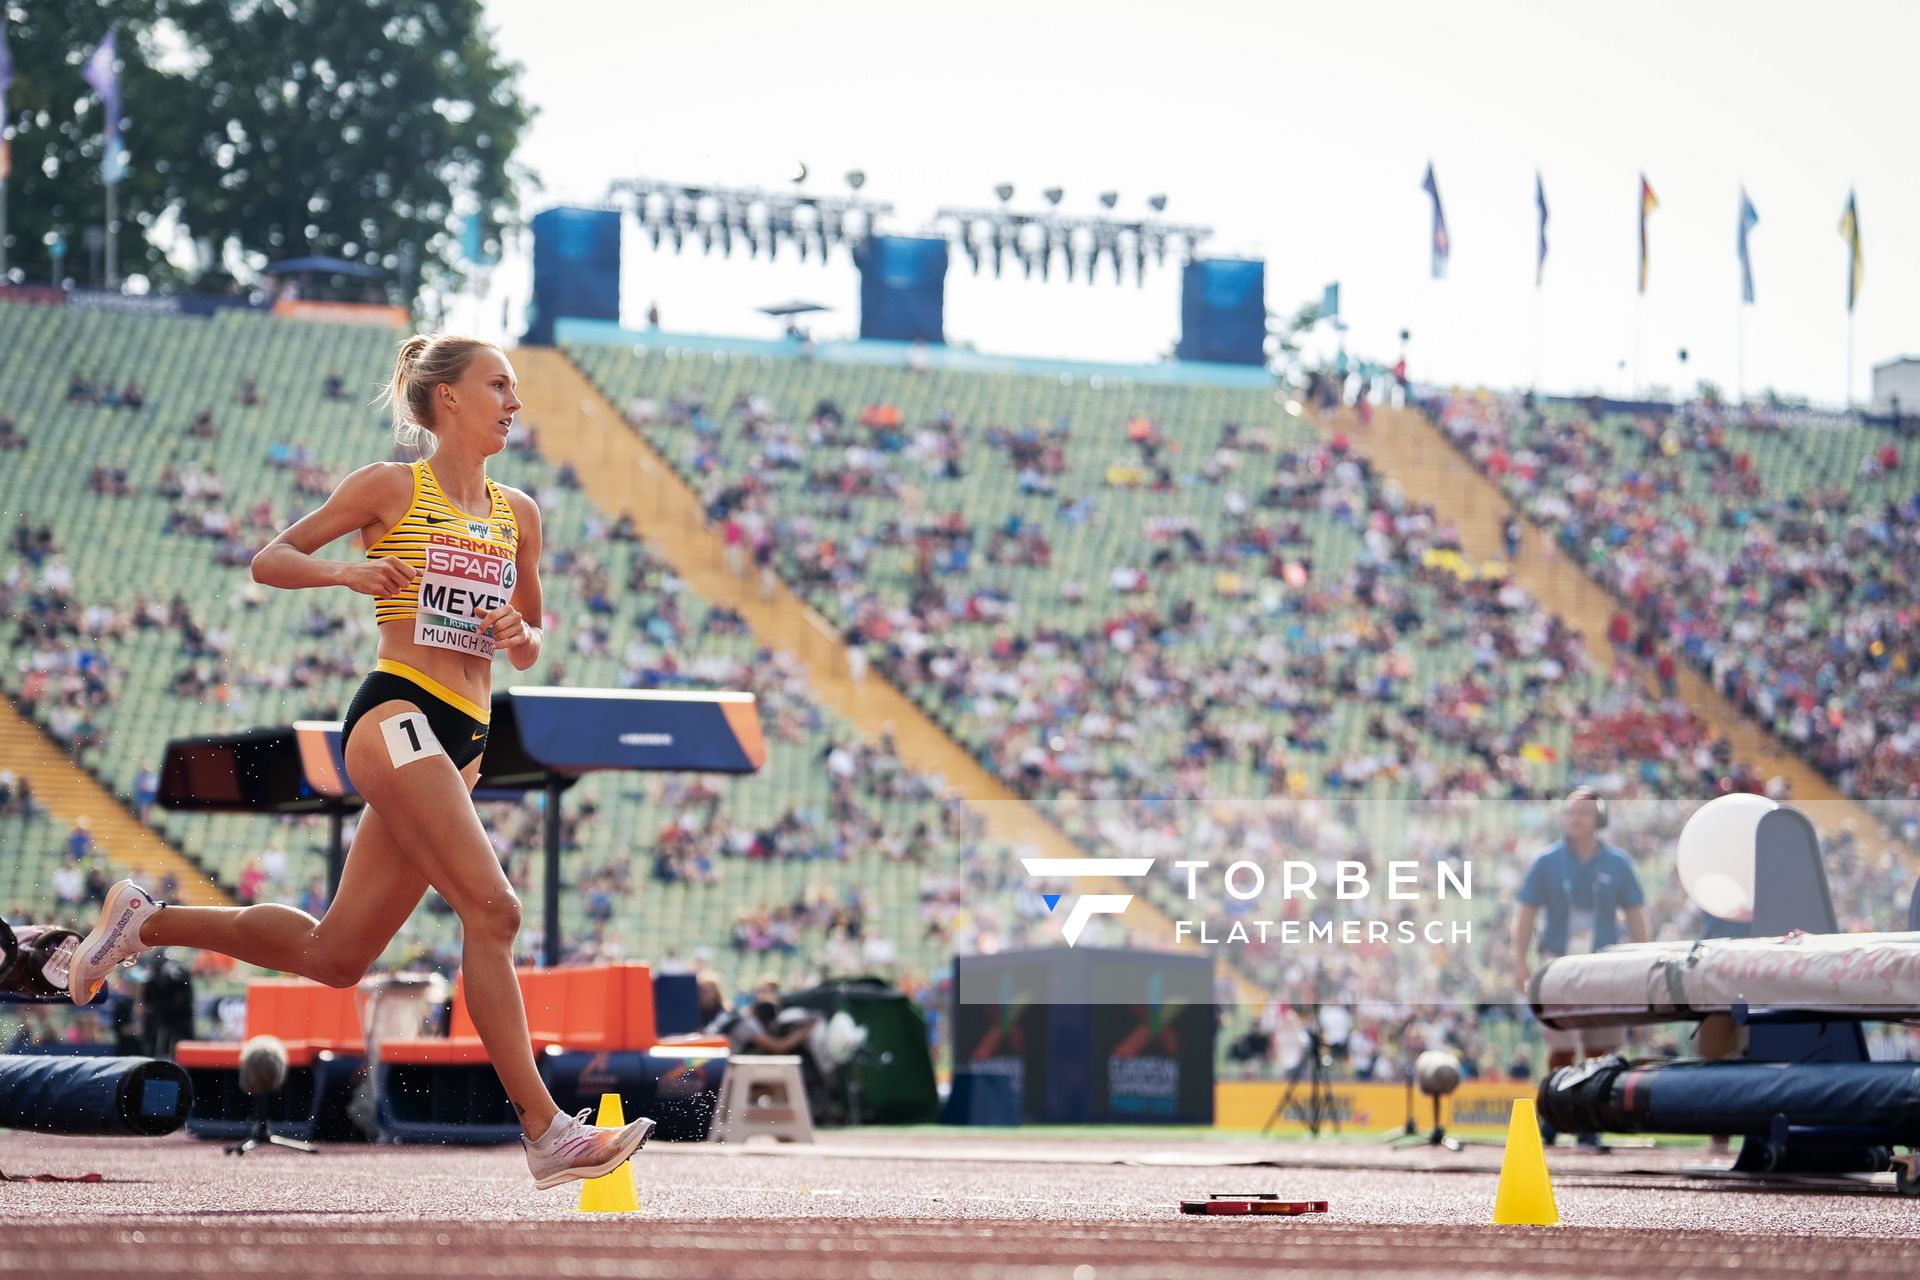 Lea Meyer (GER) im 3000m Hindernis Vorlauf am 18.08.2022 bei den Leichtathletik-Europameisterschaften in Muenchen